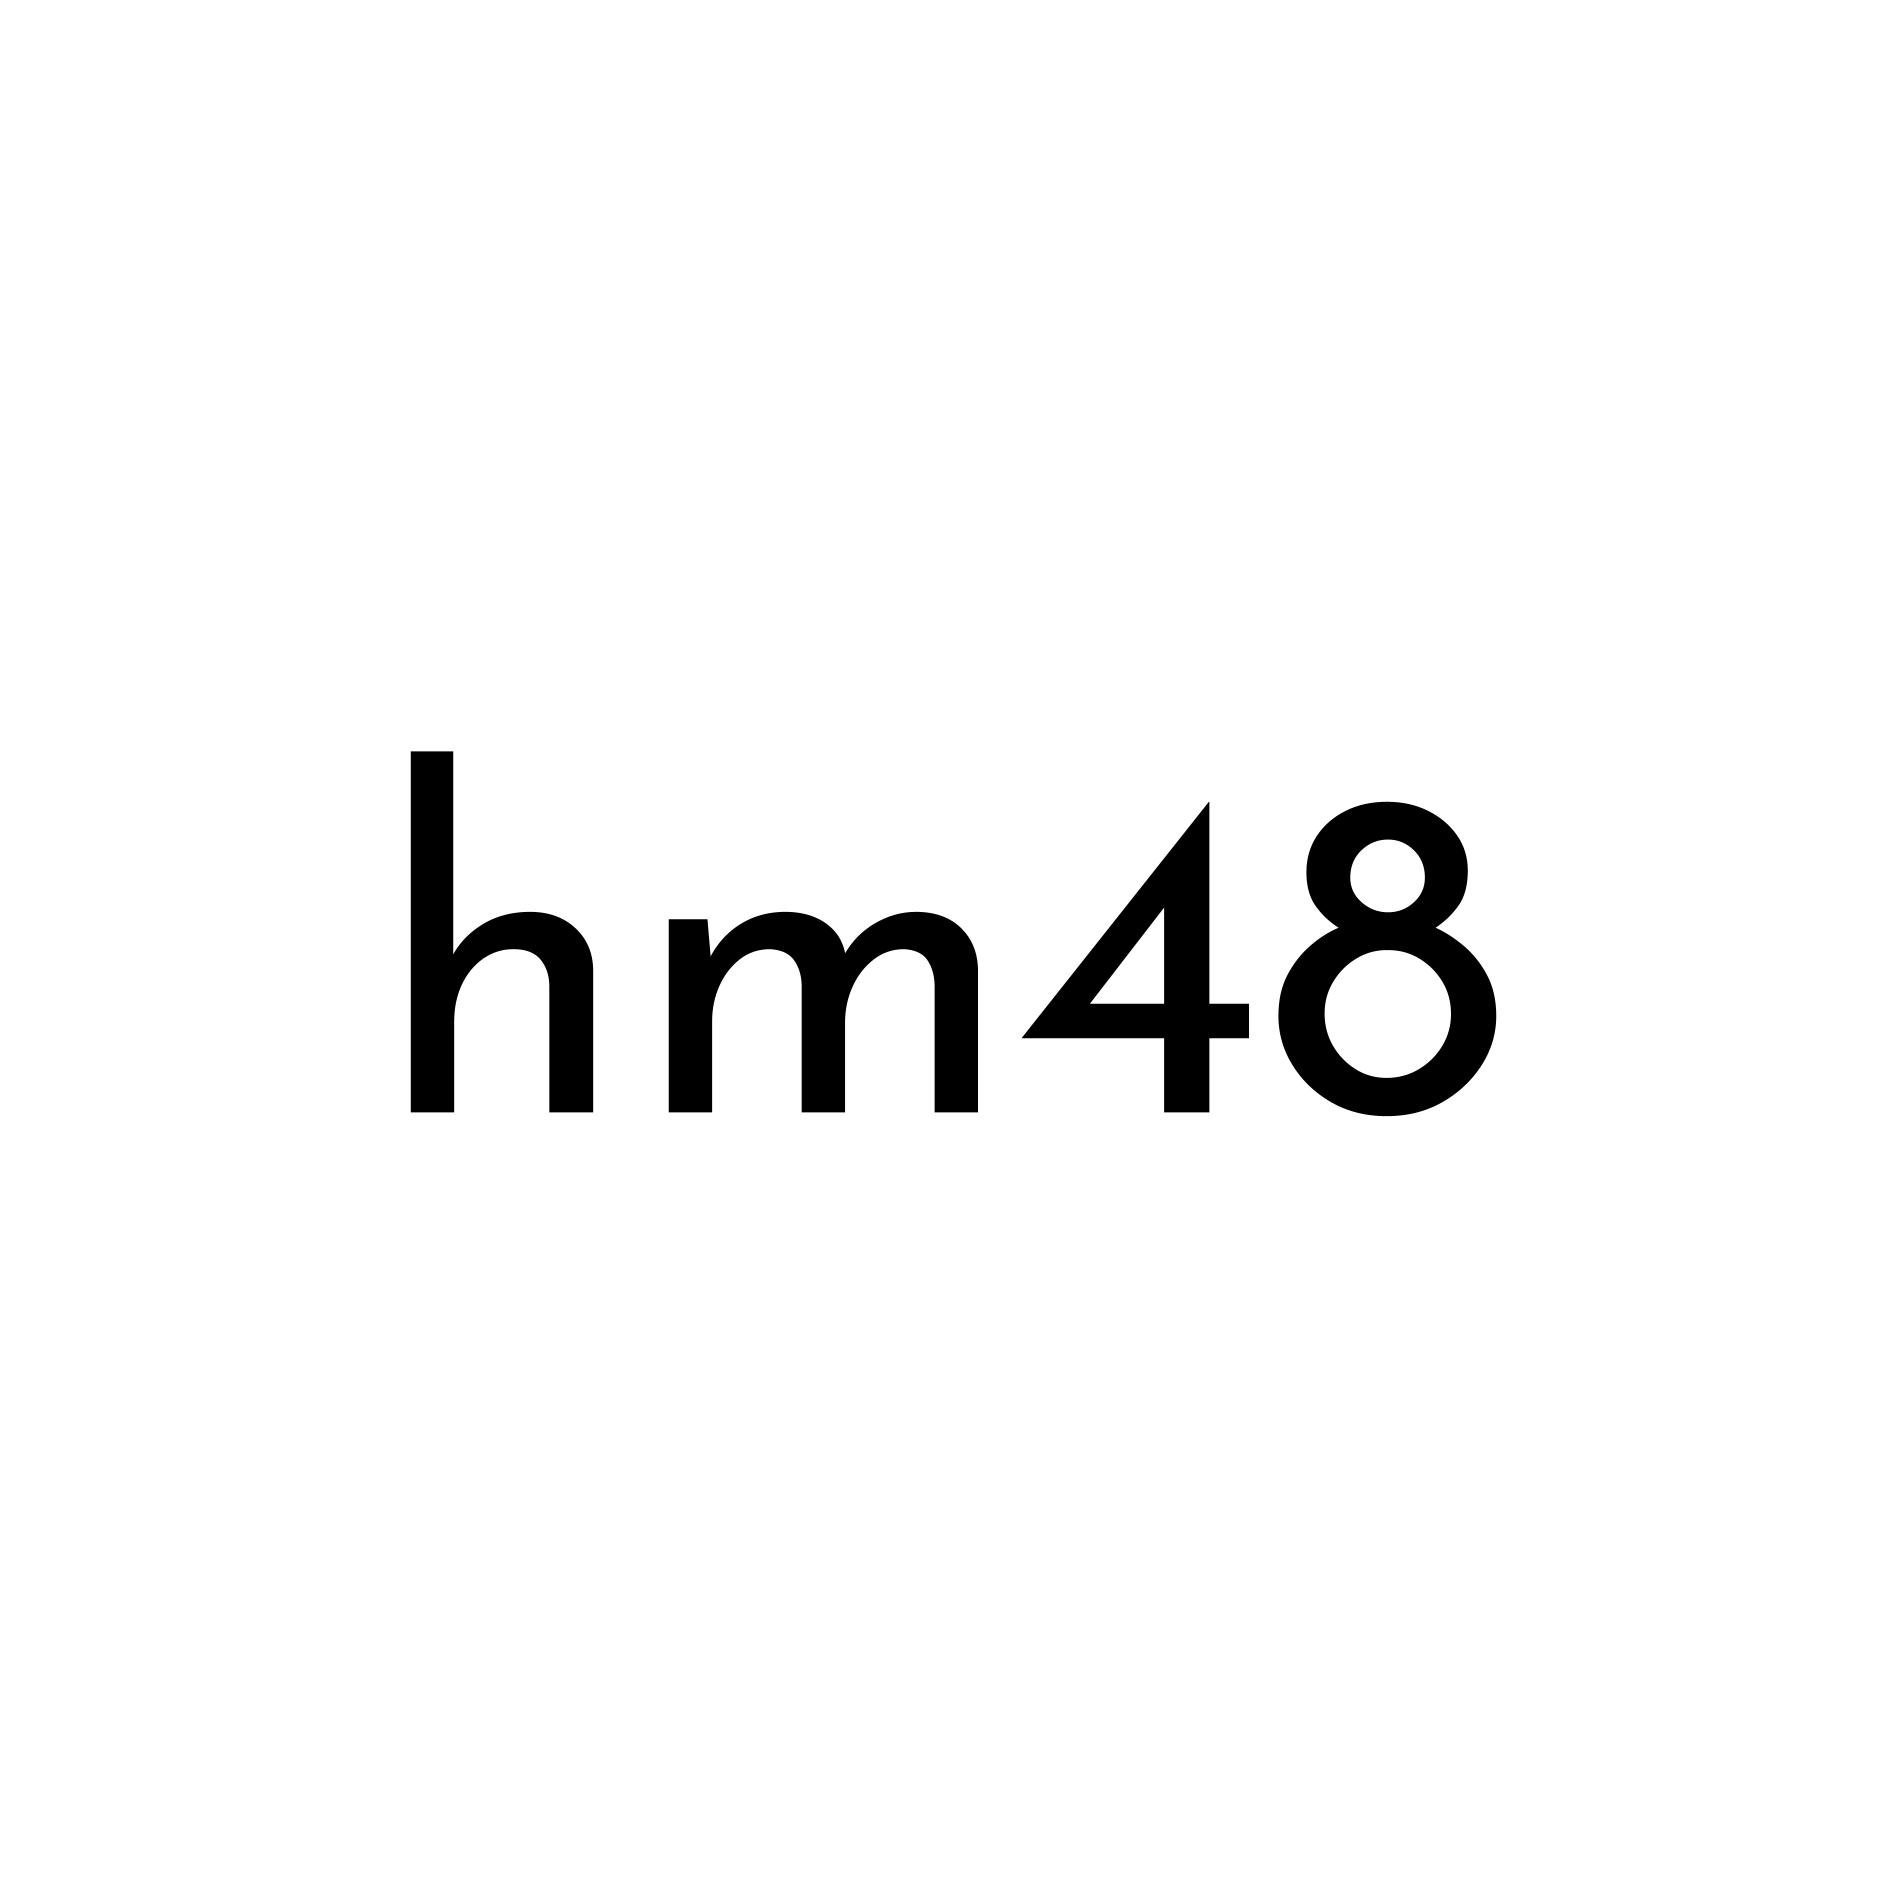 hm48.jpg